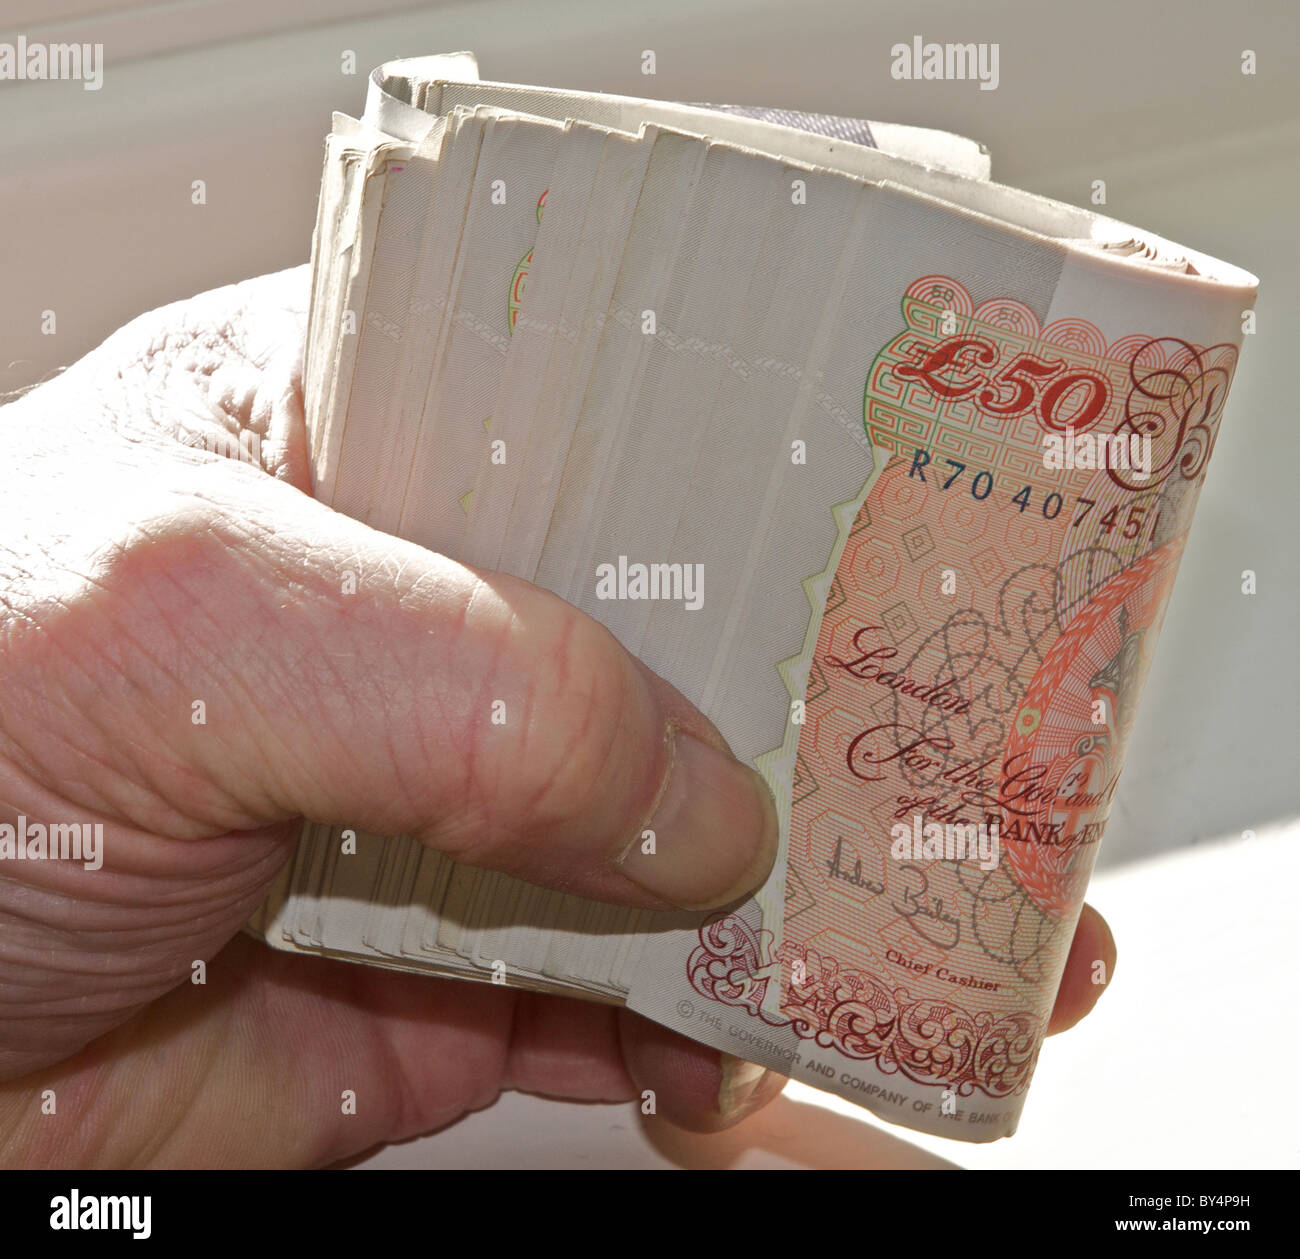 Sterling valuta, un rotolo di UK banconote migliaia di sterline in mano. (Completamente rilasciato - fotografo la propria mano). Dagli archivi di stampa Ritratto Service (ex premere ritratto Bureau) Foto Stock